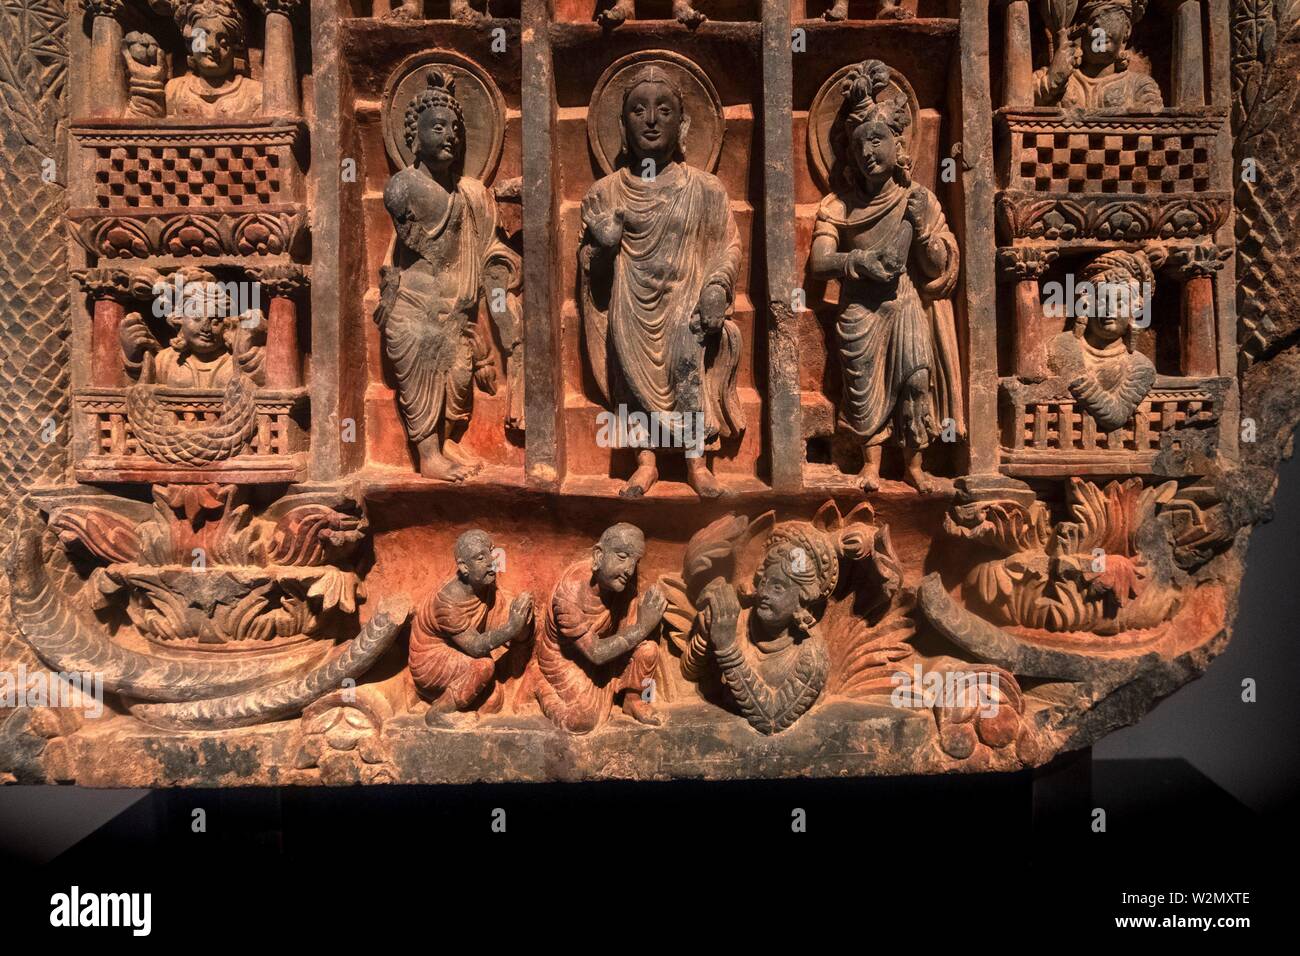 Singapour, détail d'une pierre de schiste, de la descente du Bouddha Gandhara (ciel Trayastrimsa- 3e. 4e. siècle). Musée des Civilisations Asiatiques. Banque D'Images